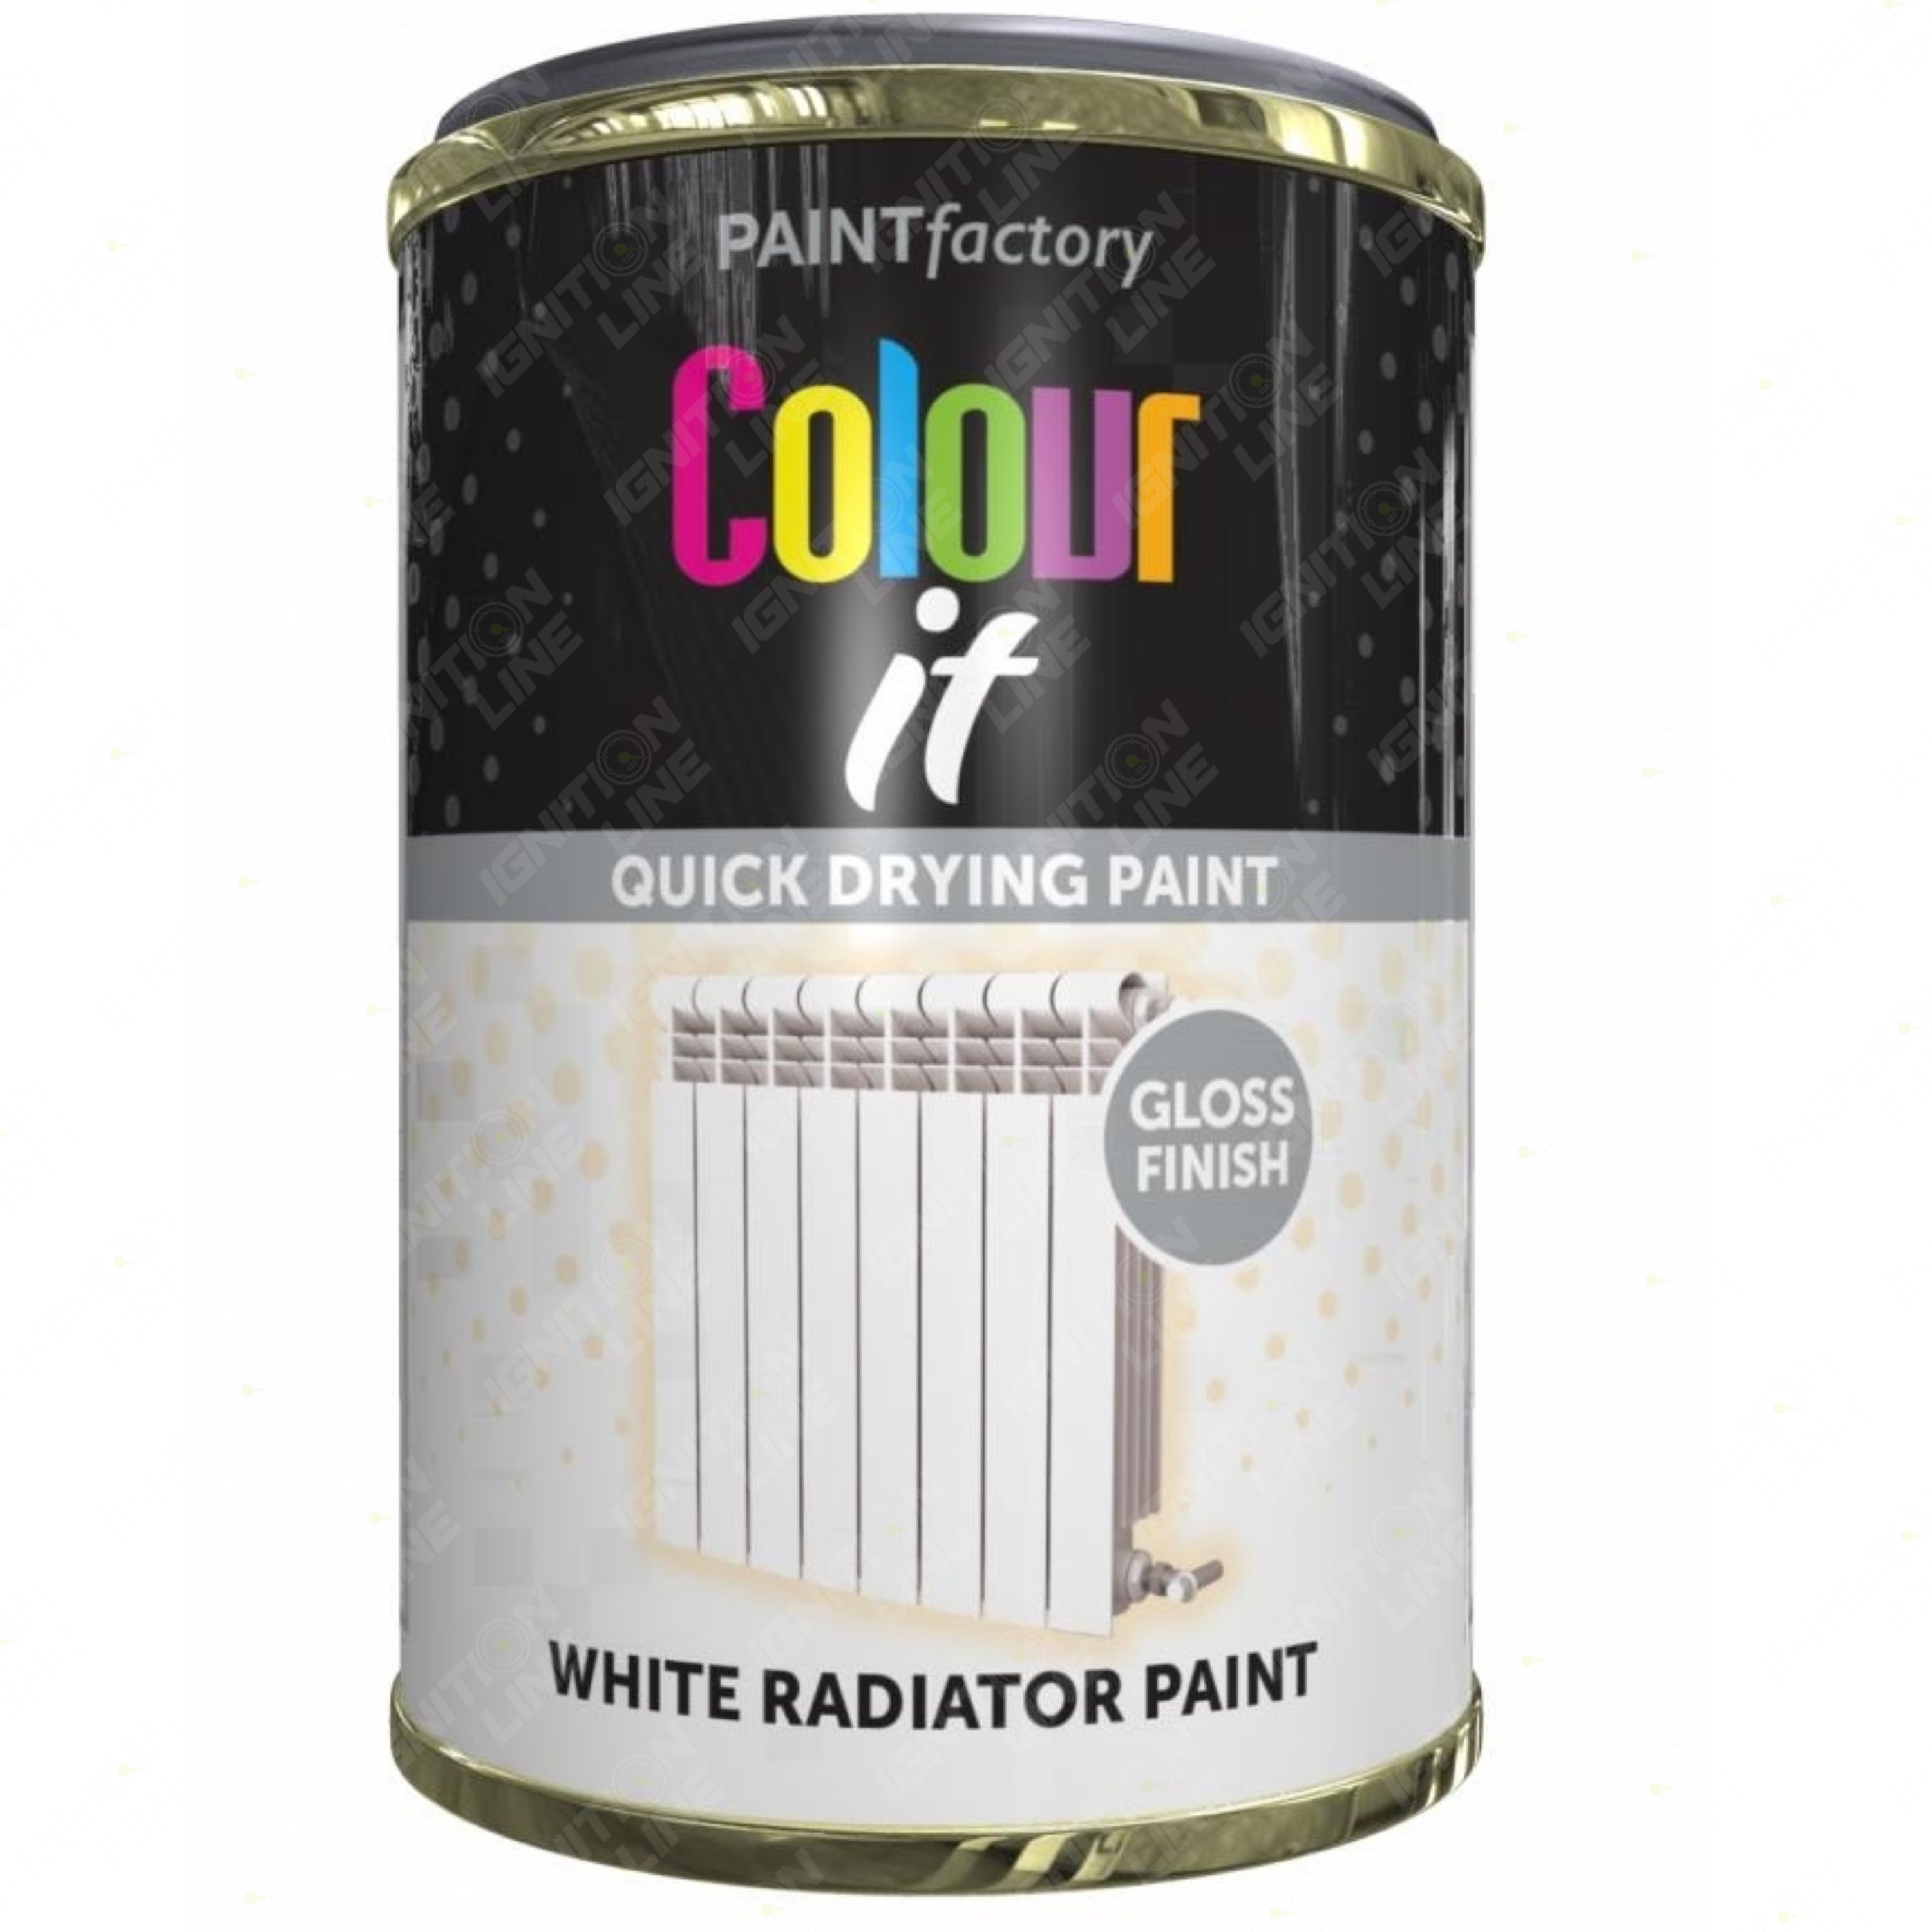 Paintfactory White Radiator Paint Tin 300ml